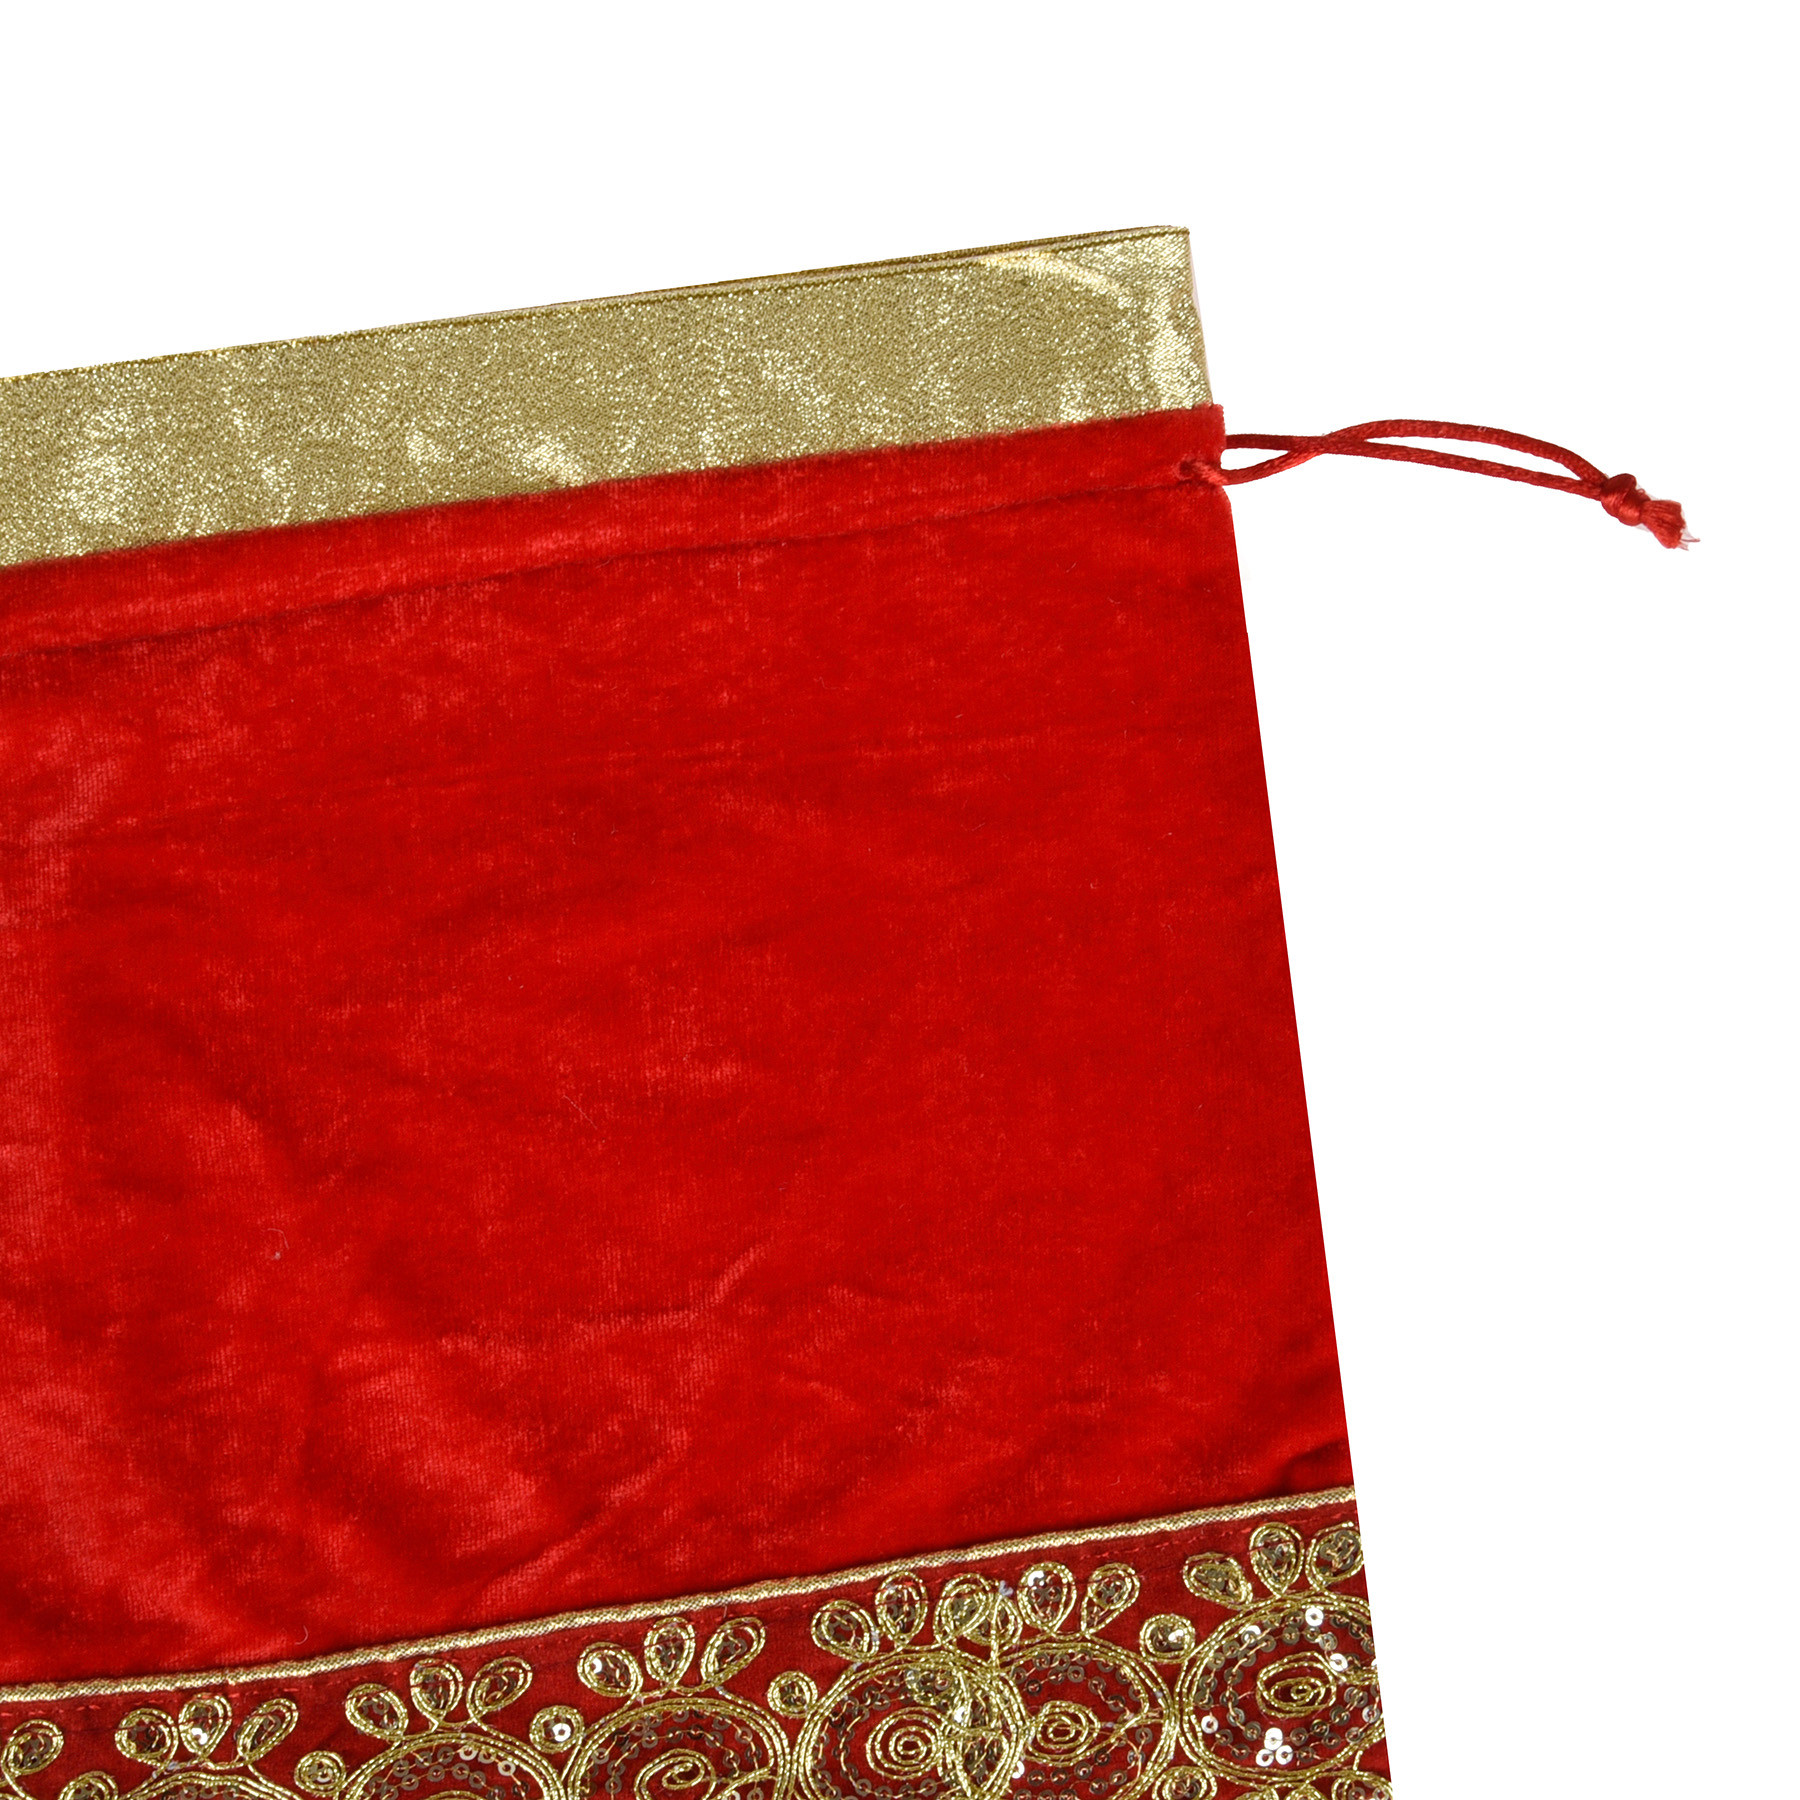 Kuber Industries Potli | Velvet Wedding Potli | Drawstring Closure Potli | Wallet Potli | Christmas Gift Potli | Baby Shower Potli | Traditional Shagun Potli | Gota Potli | 9x12 Inch |Red